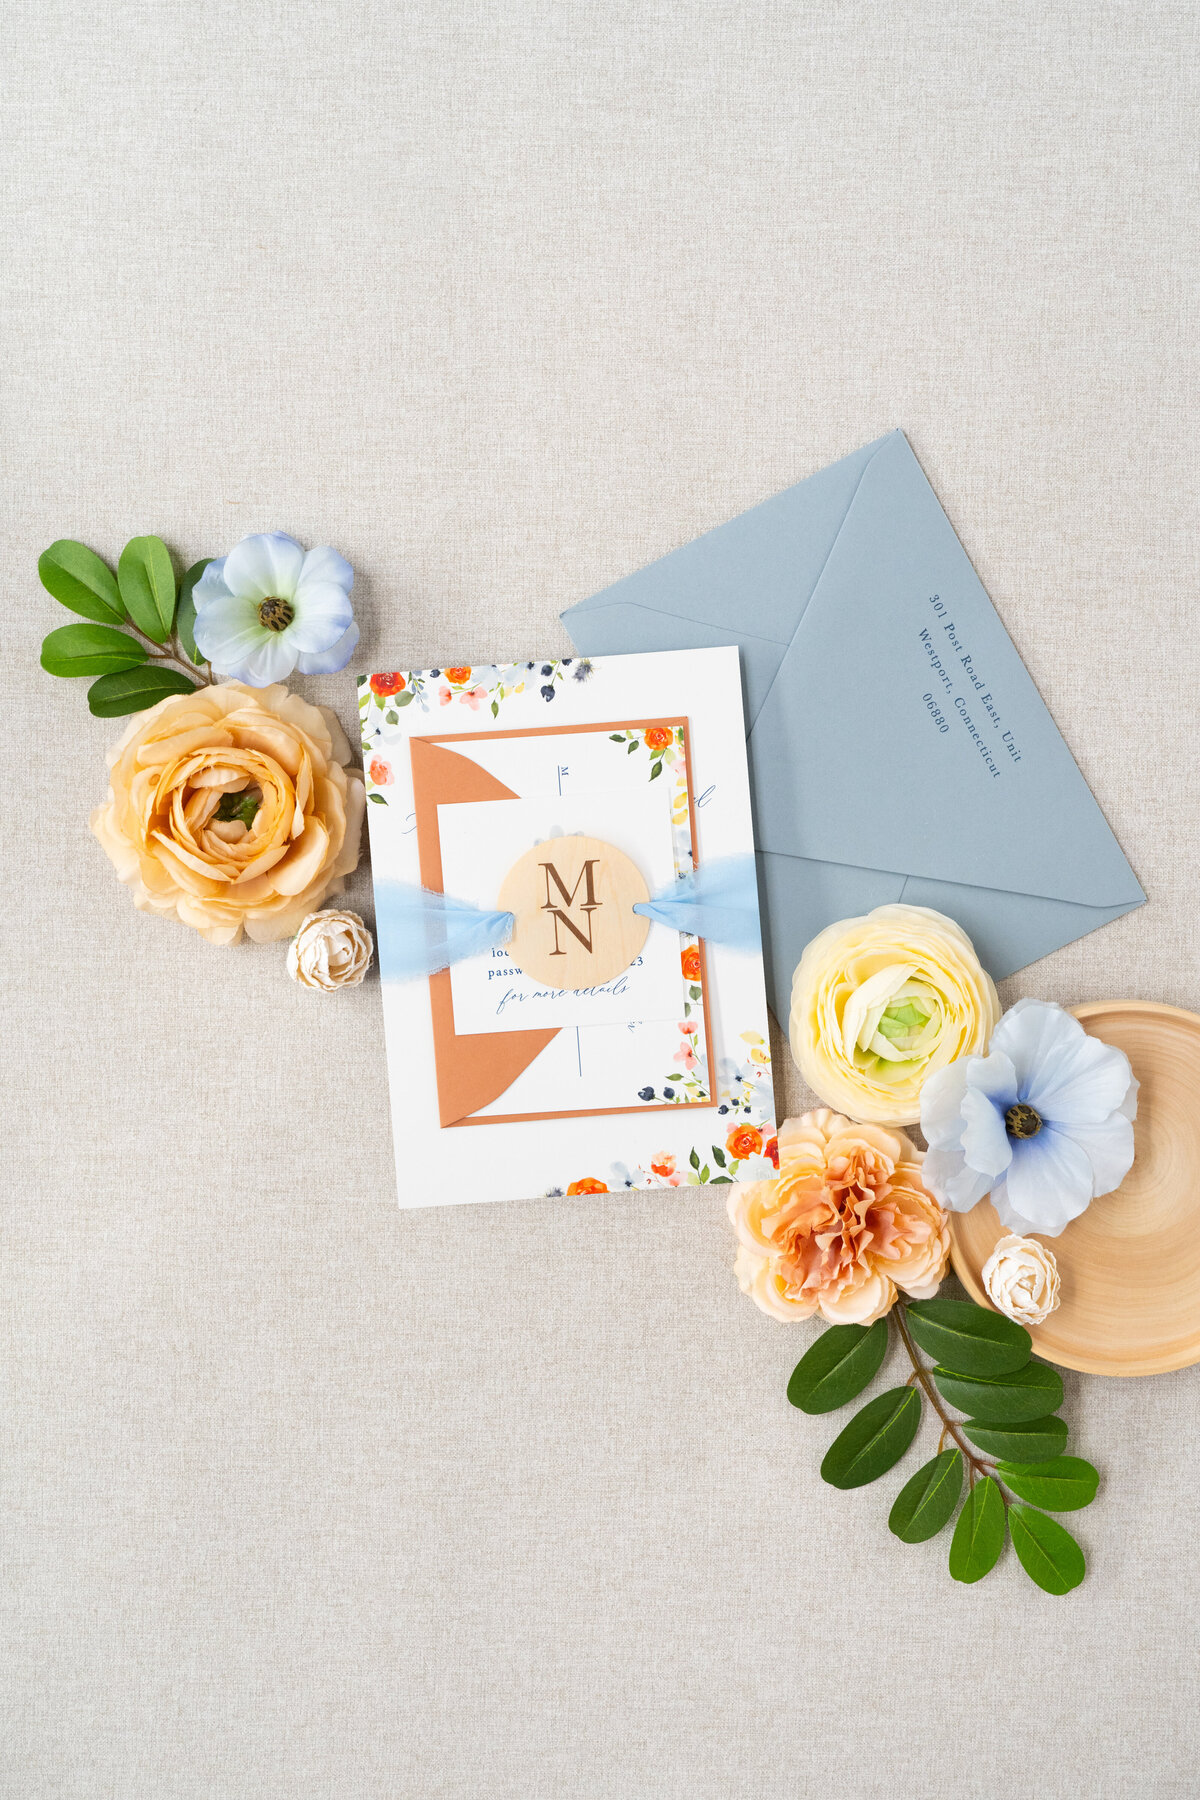 Romantic rustic wedding invitation